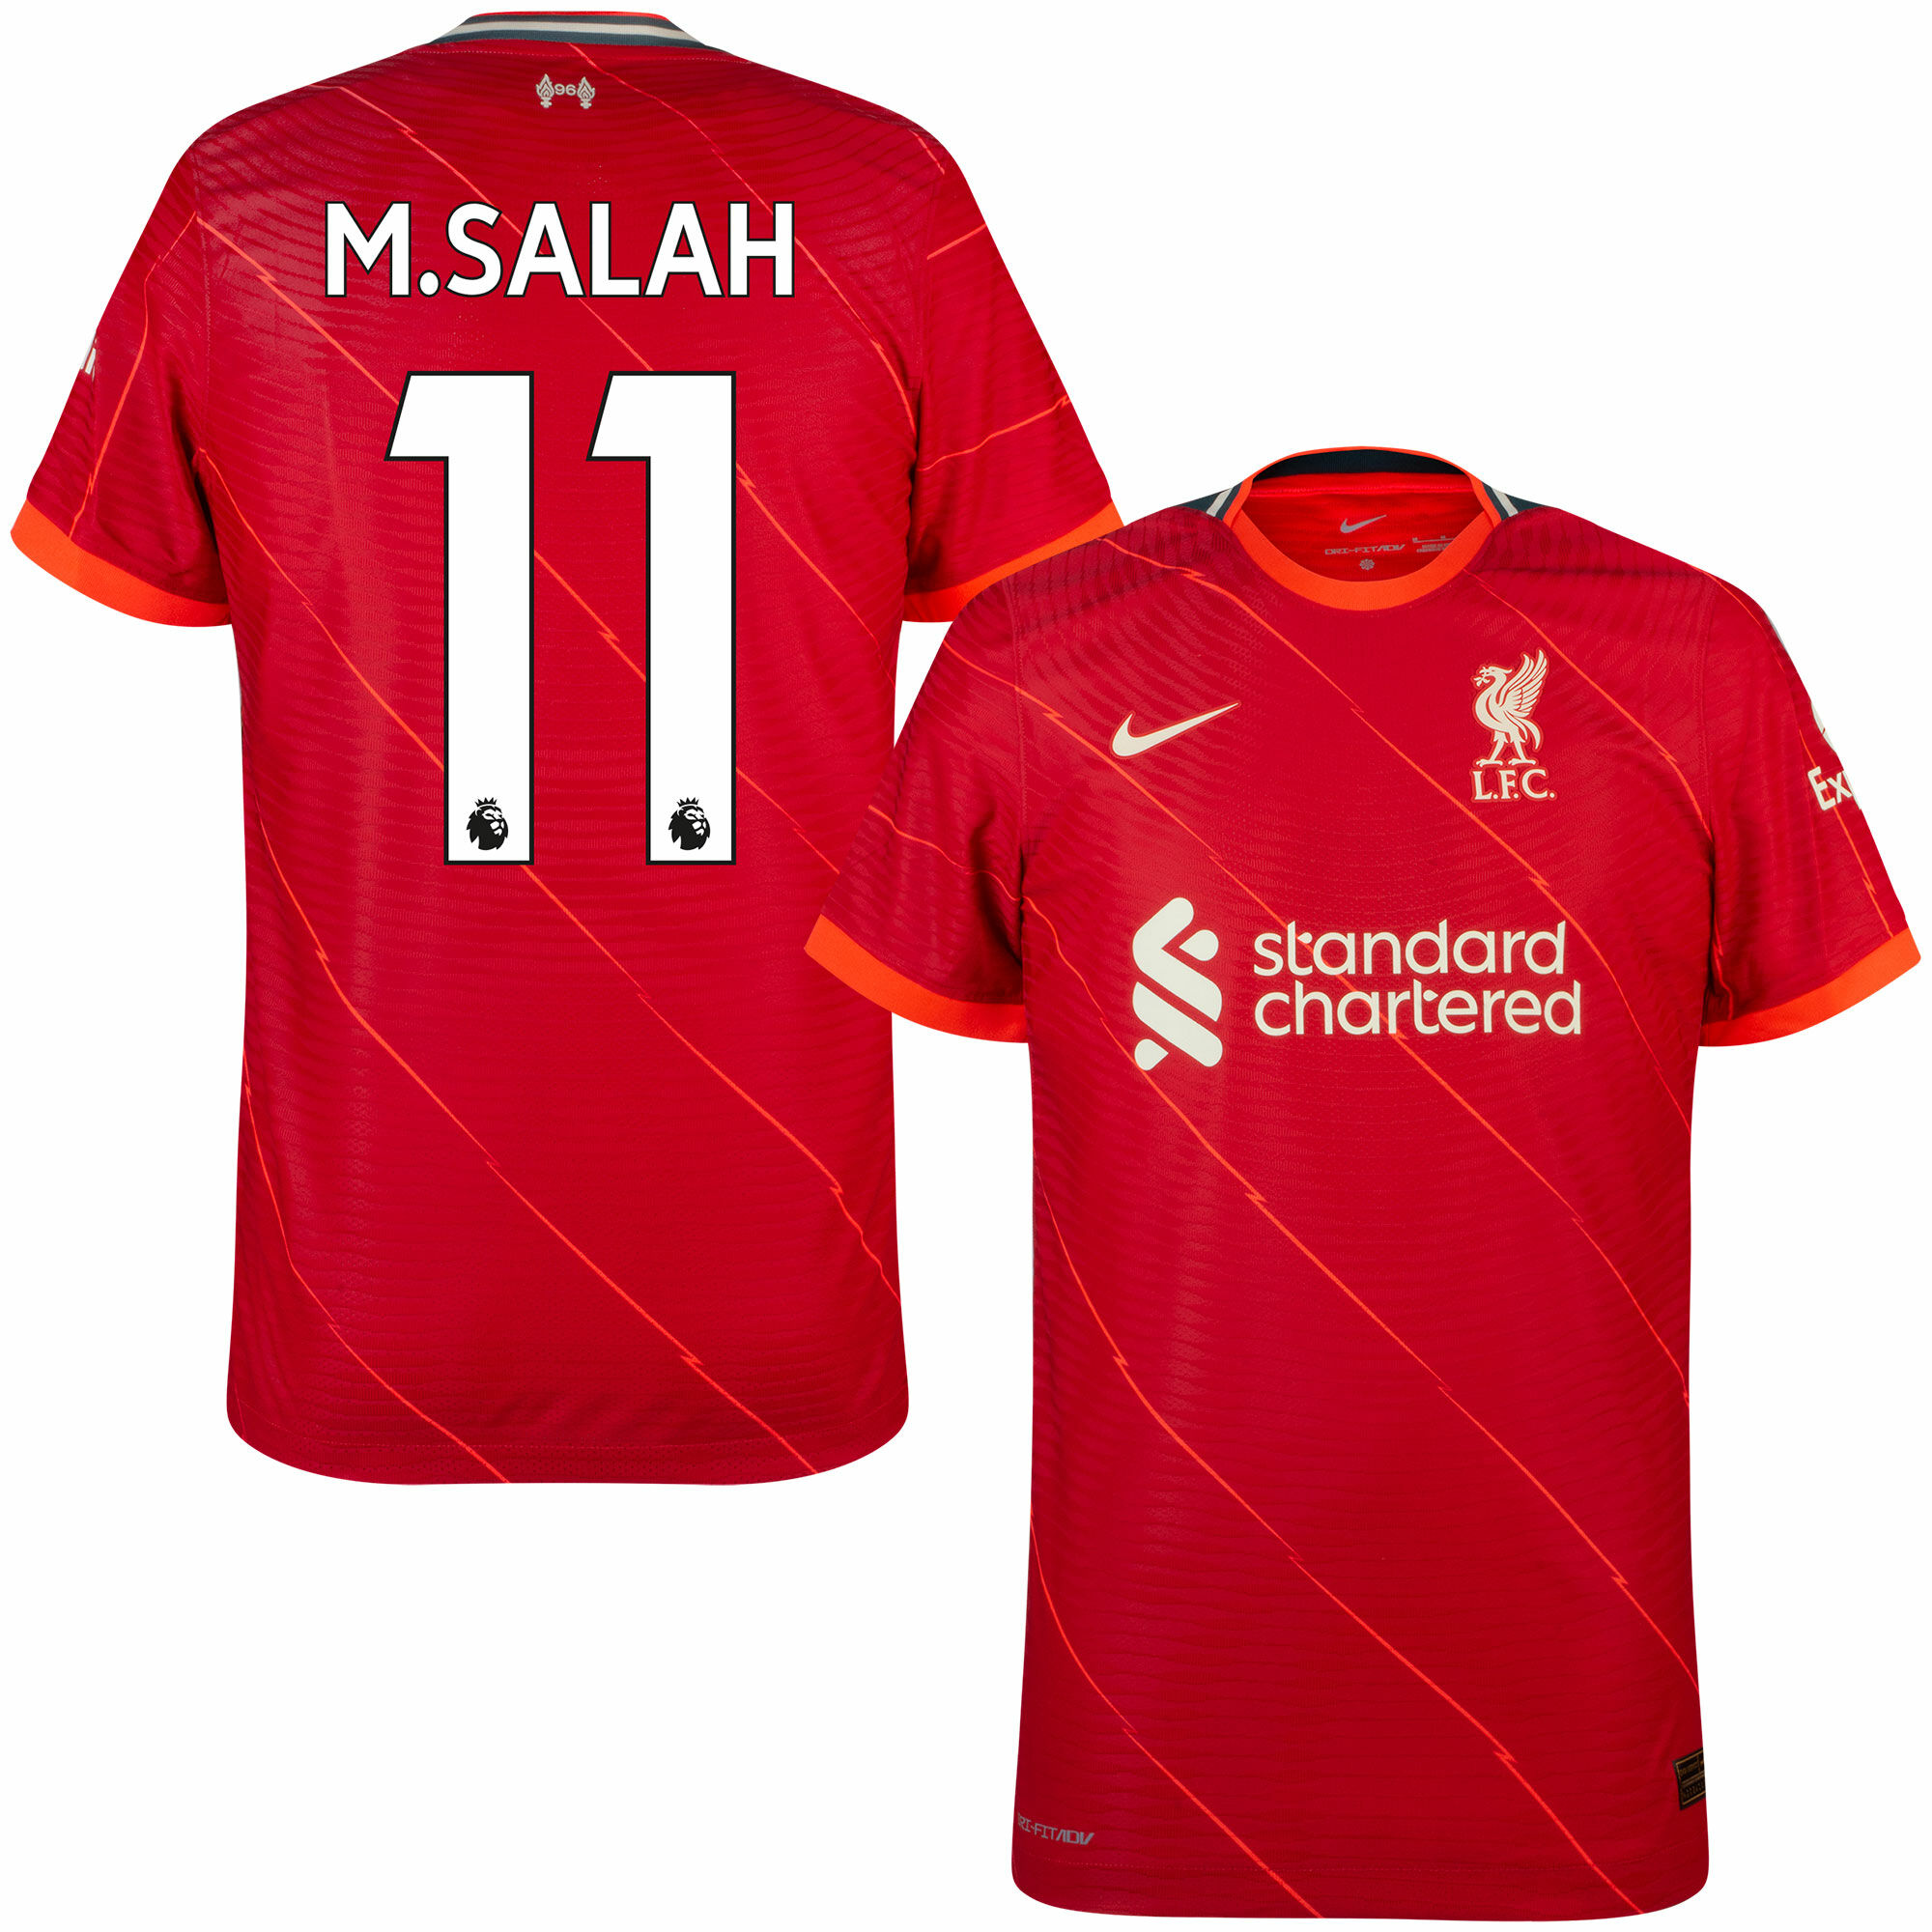 Liverpool - Dres fotbalový "Match" - sezóna 2021/22, Mohamed Salah, Dri-FIT ADV, domácí, číslo 11, červený